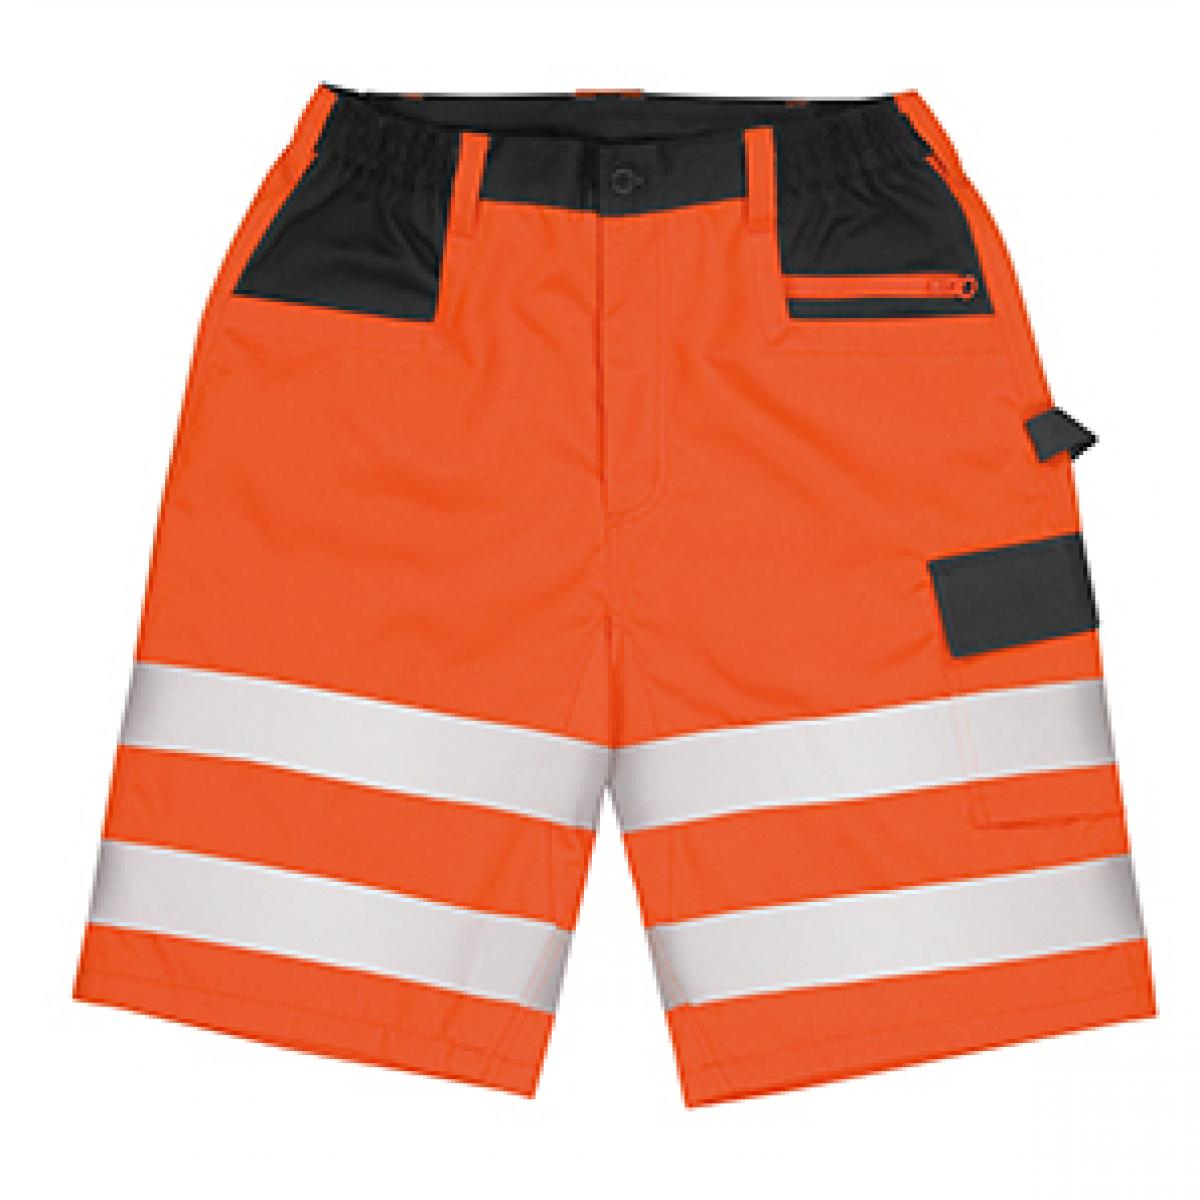 Hersteller: Result Herstellernummer: R328X Artikelbezeichnung: Safety Cargo Shorts - Kurze Arbeitshose nach EN20471:2013 K Farbe: Fluorescent Orange